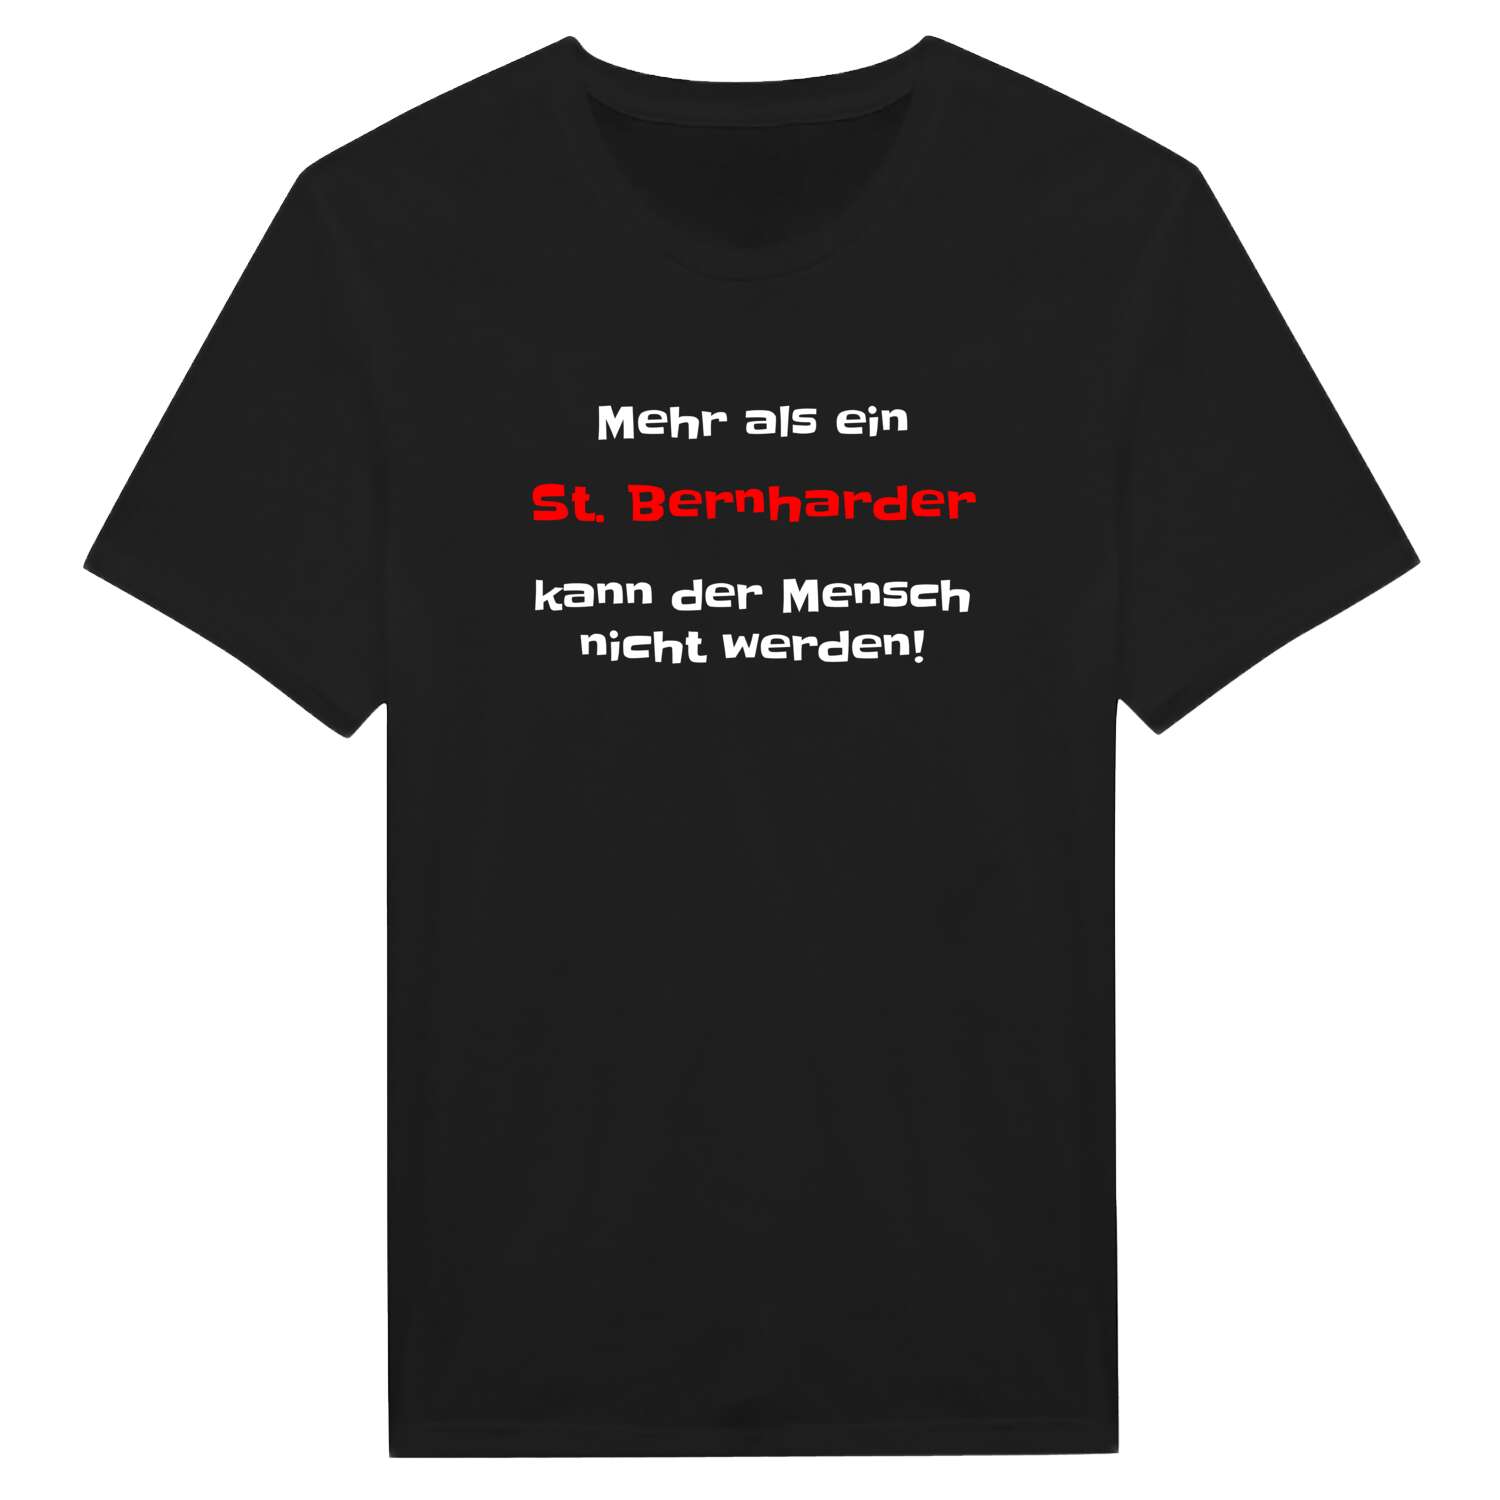 St. Bernhard T-Shirt »Mehr als ein«